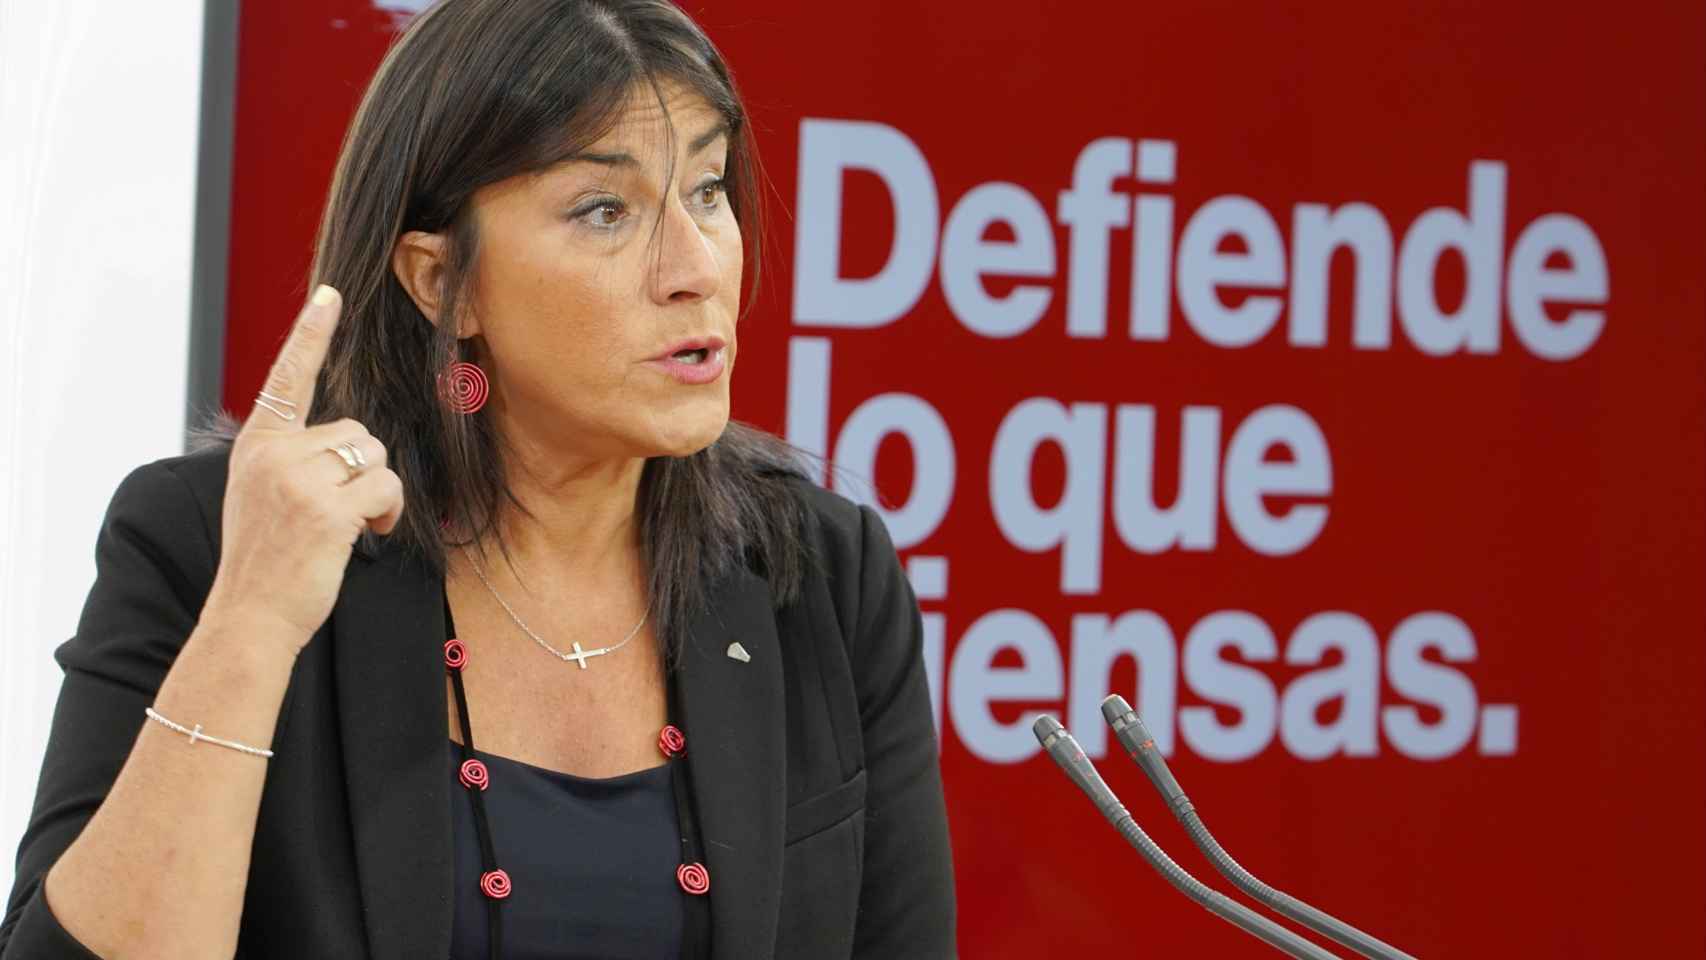 La secretaria de Organización del PSOECyL, Ana Sánchez, presenta en rueda de prensa la campaña electoral de los socialistas del Castilla y León a las elecciones municipales del 28M.